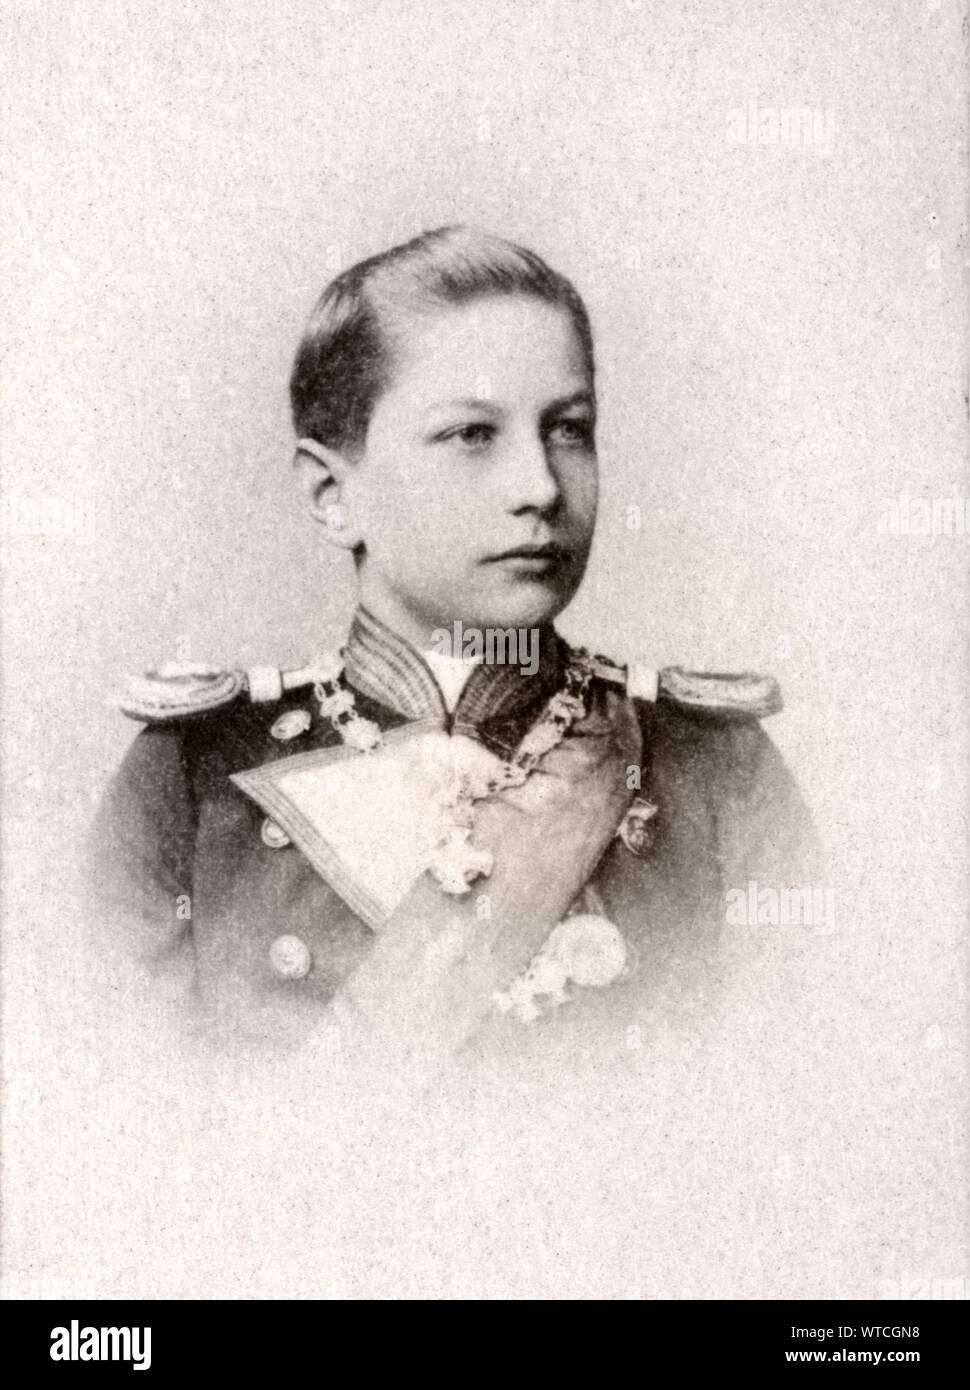 Il principe Adalberto di Prussia (Adalberto Ferdinando Berengario Viktor; 1884 - 1948) era il terzo figlio di Guglielmo II, Imperatore Tedesco dalla sua prima moglie, Principe Foto Stock